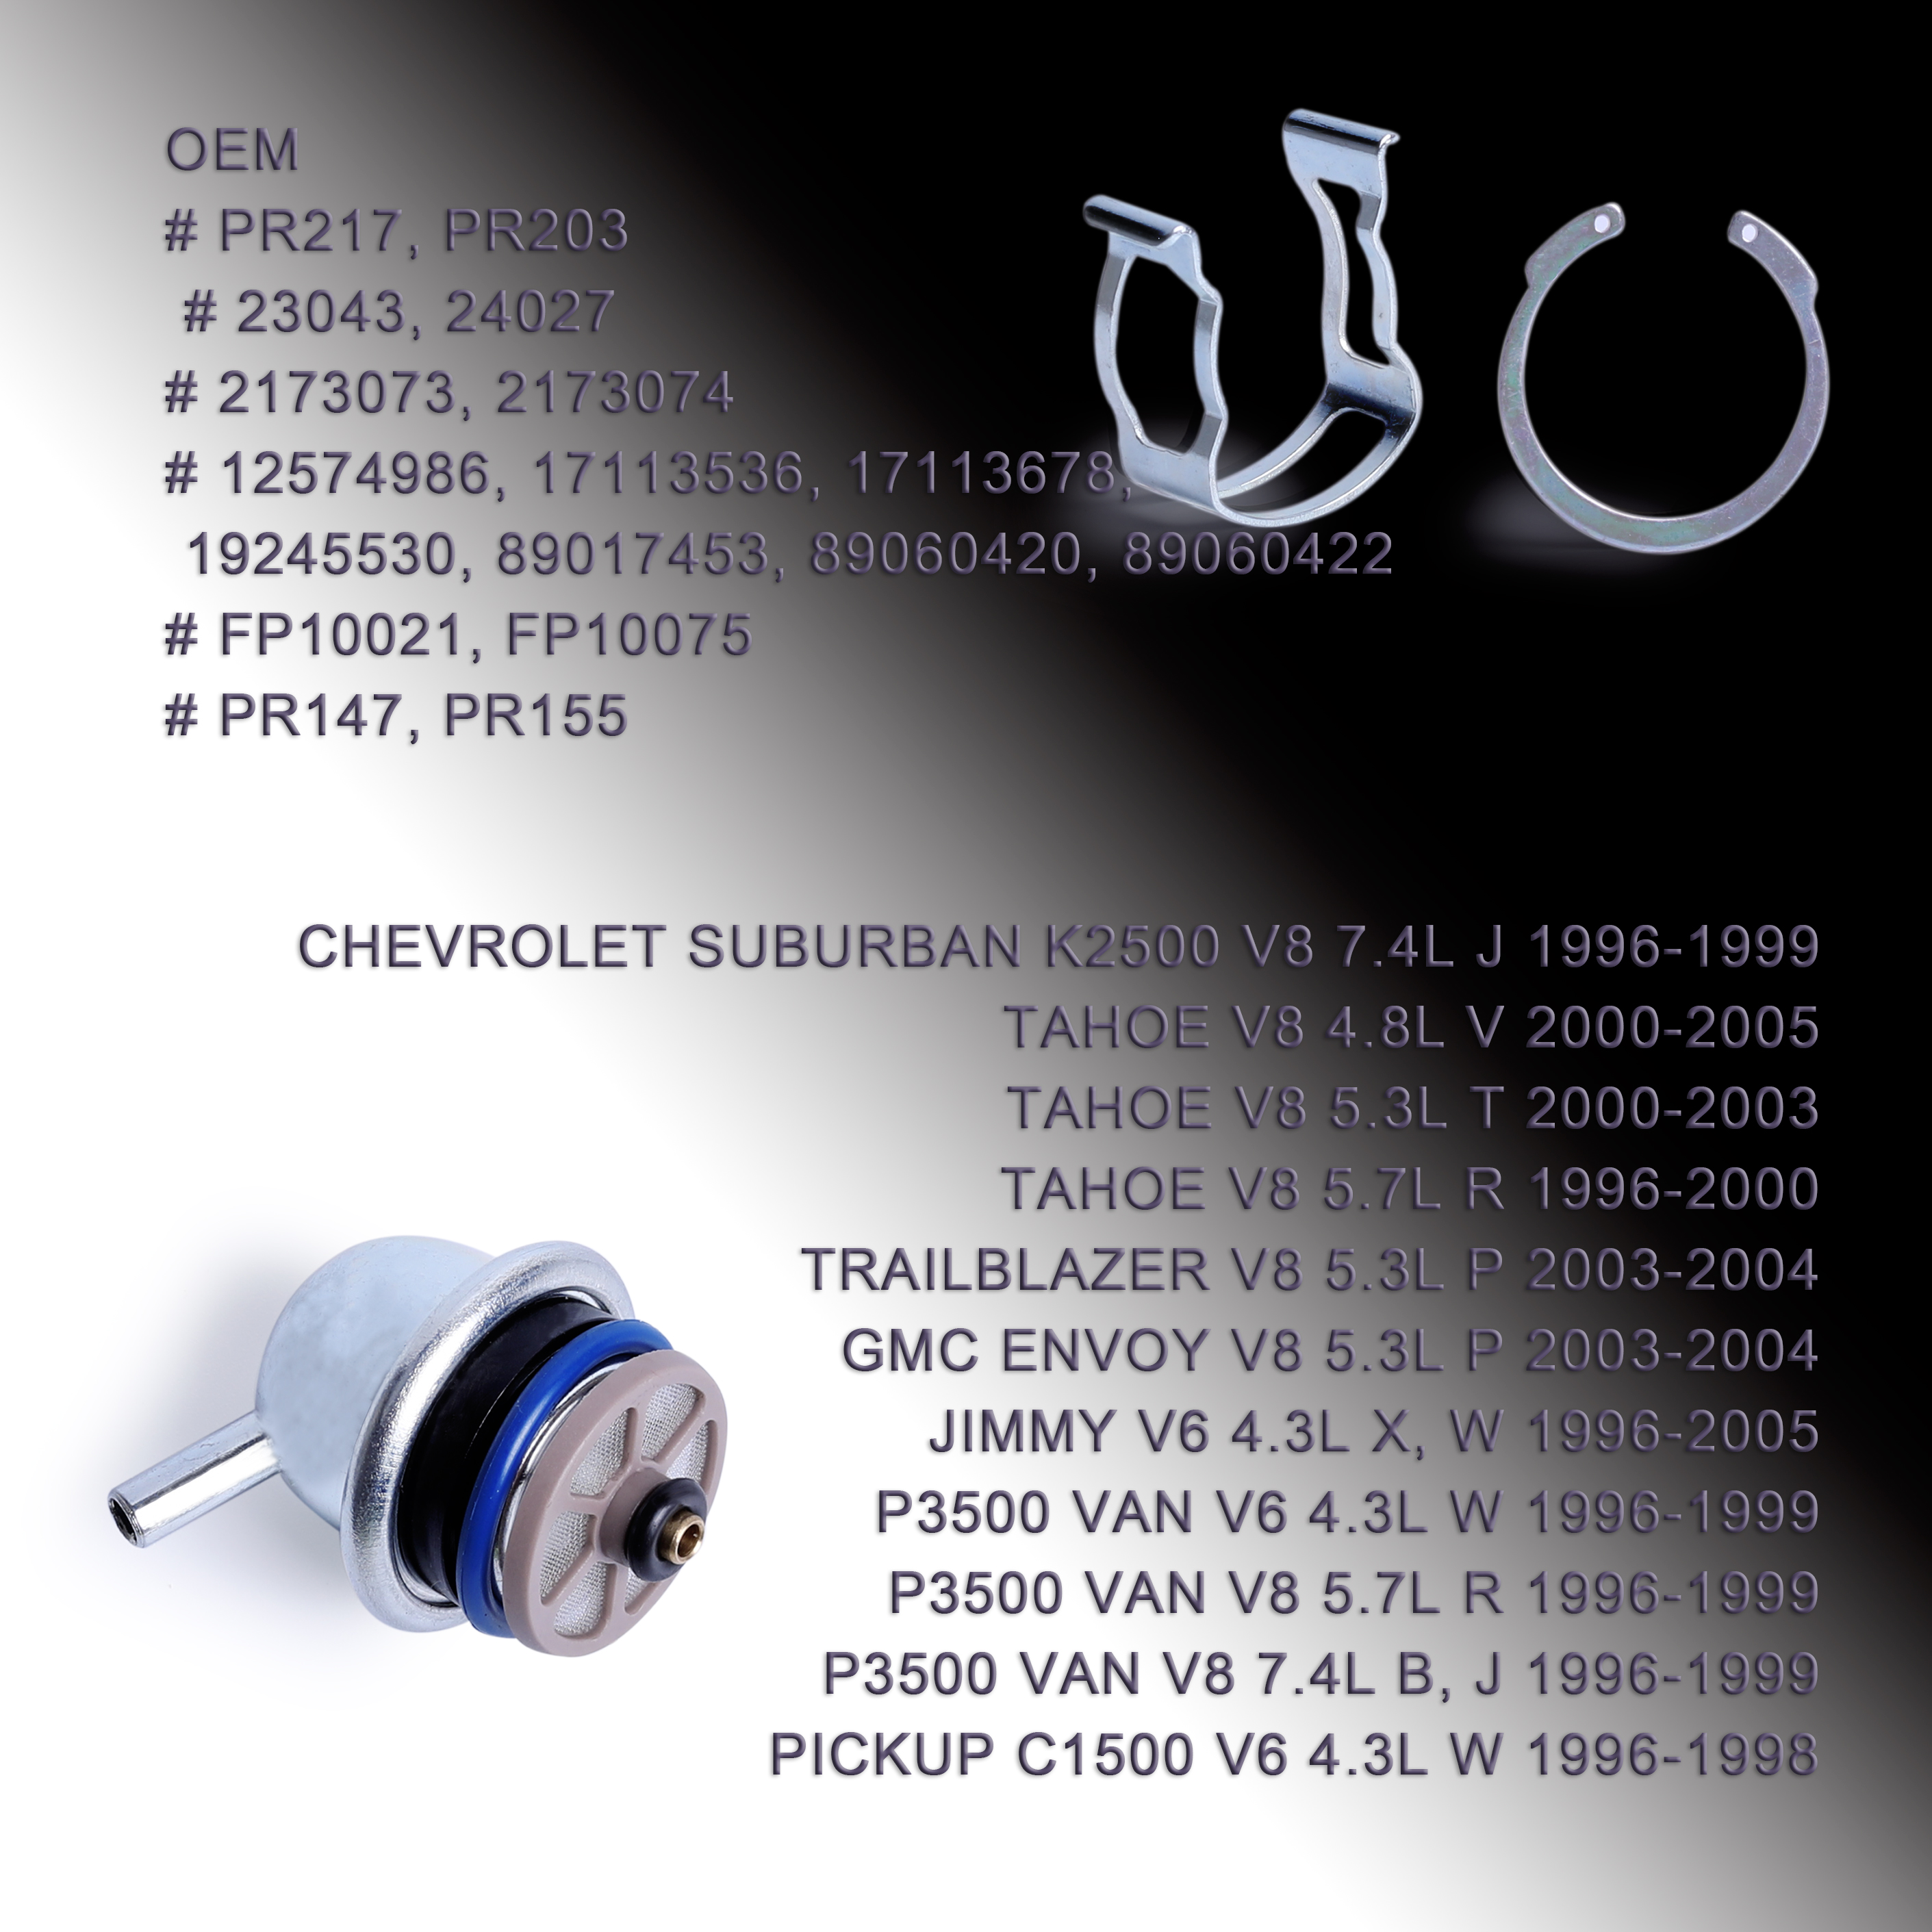 New Fuel Injection Pressure Regulator For Buick Cadillac Escalade Chevrolet Sliverado GMC Pontiac Grand PR147 17113203,89017453